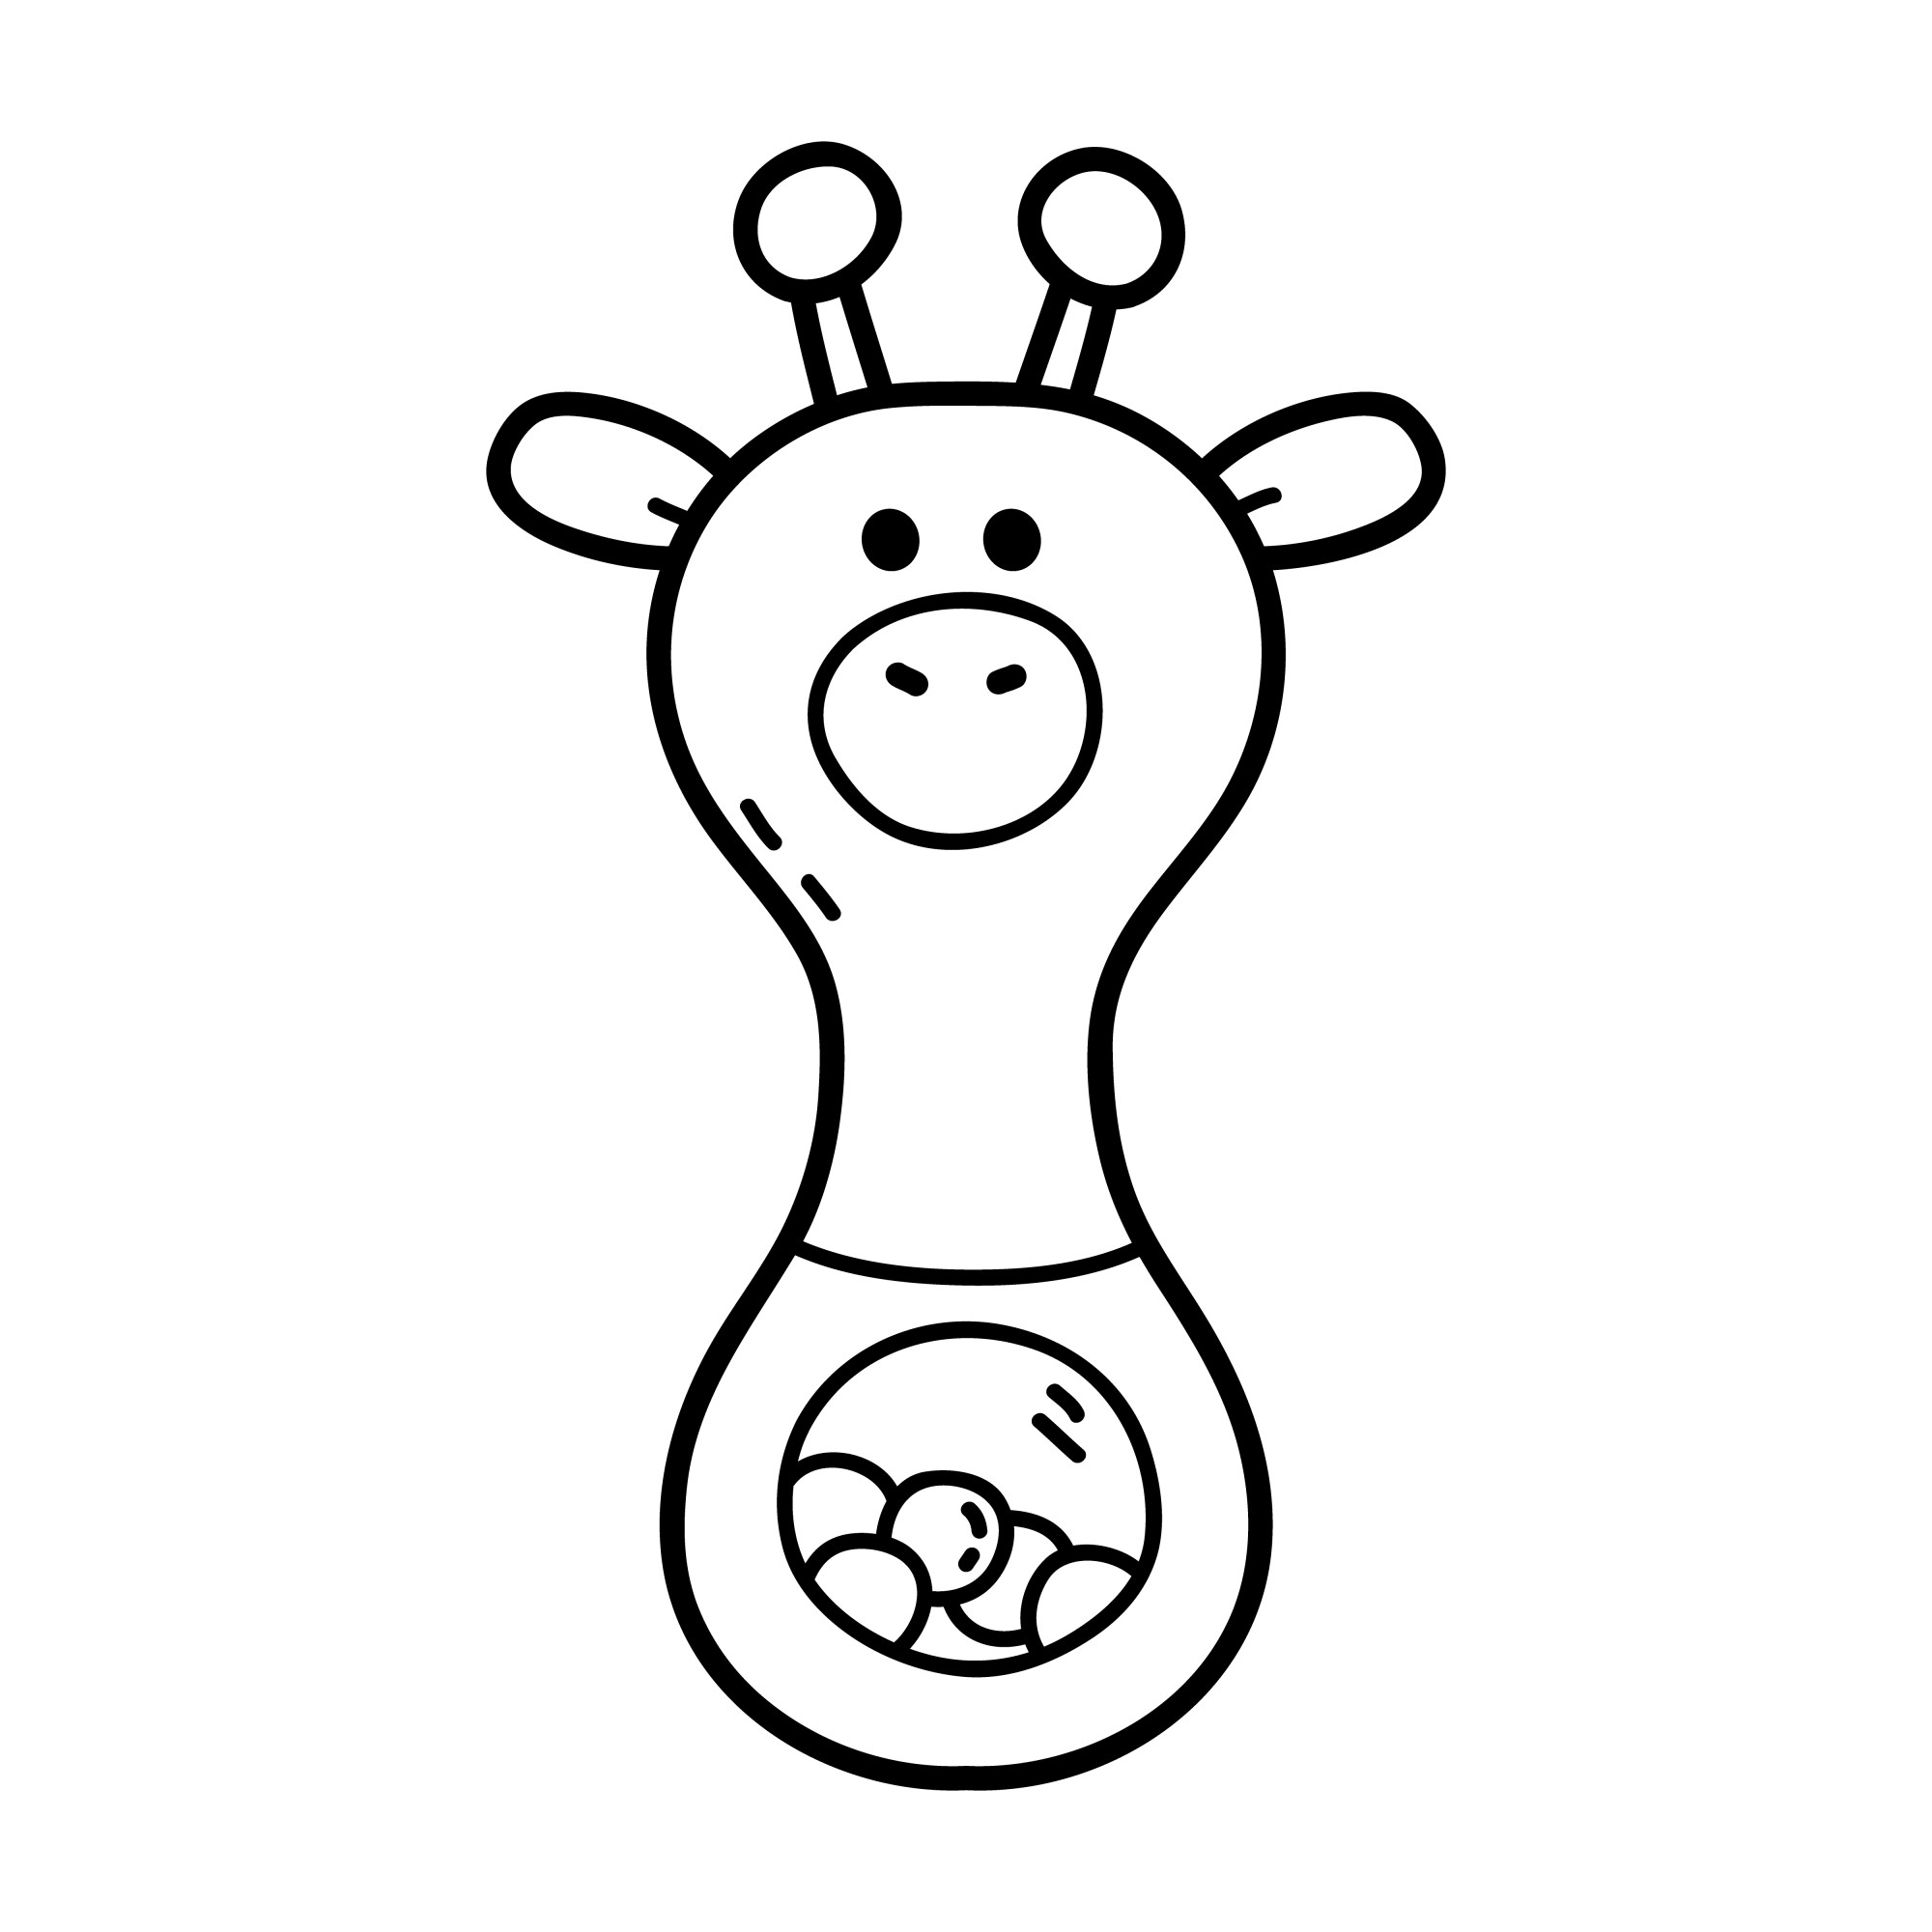 Раскраска для детей: игрушка погремушка жираф